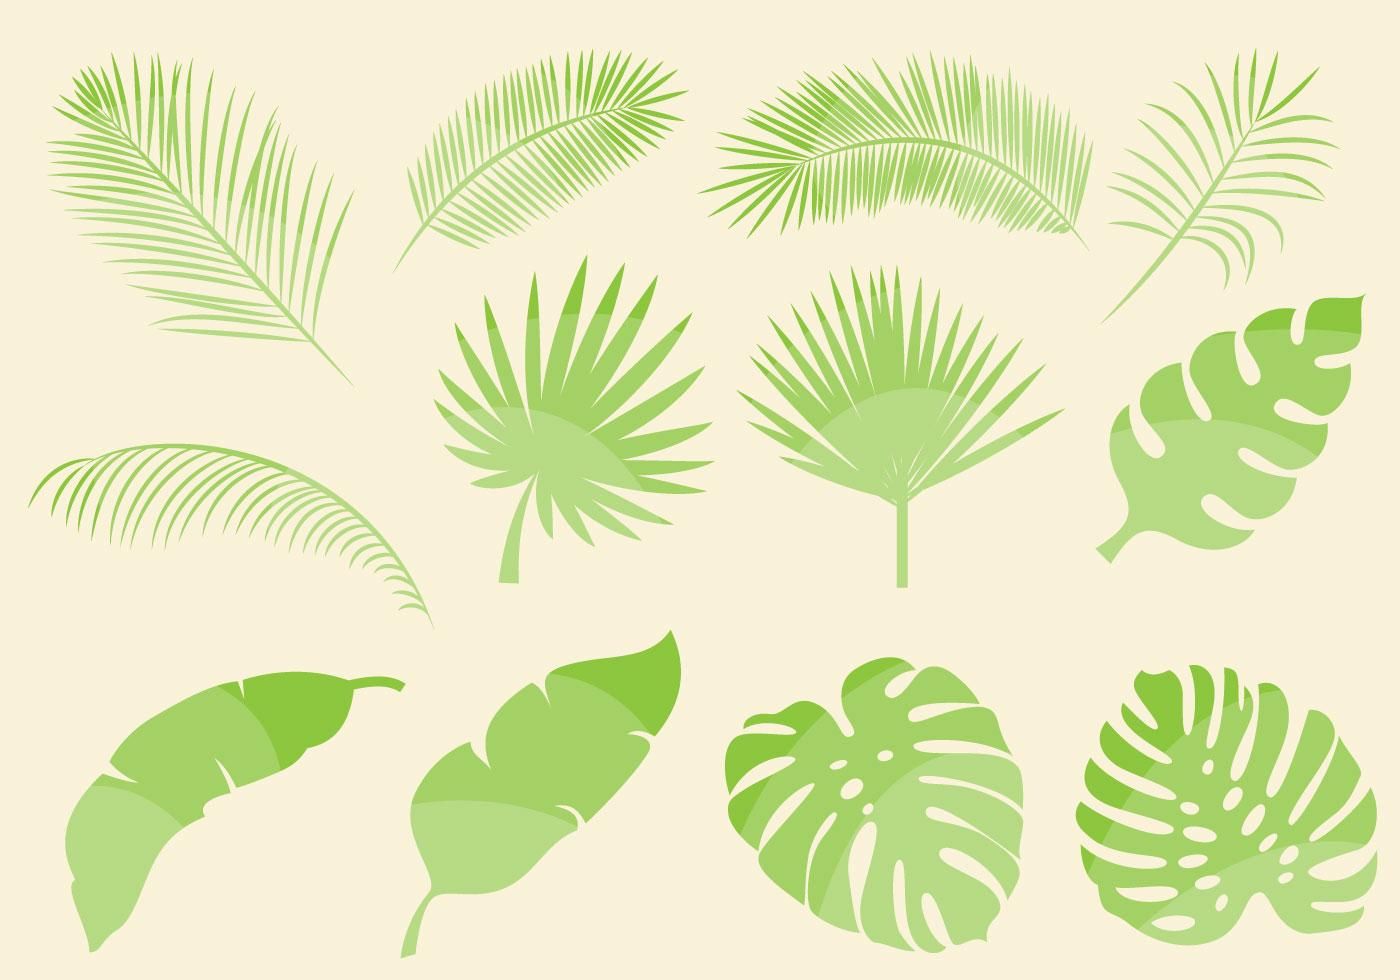 Tropical leaf vectors.